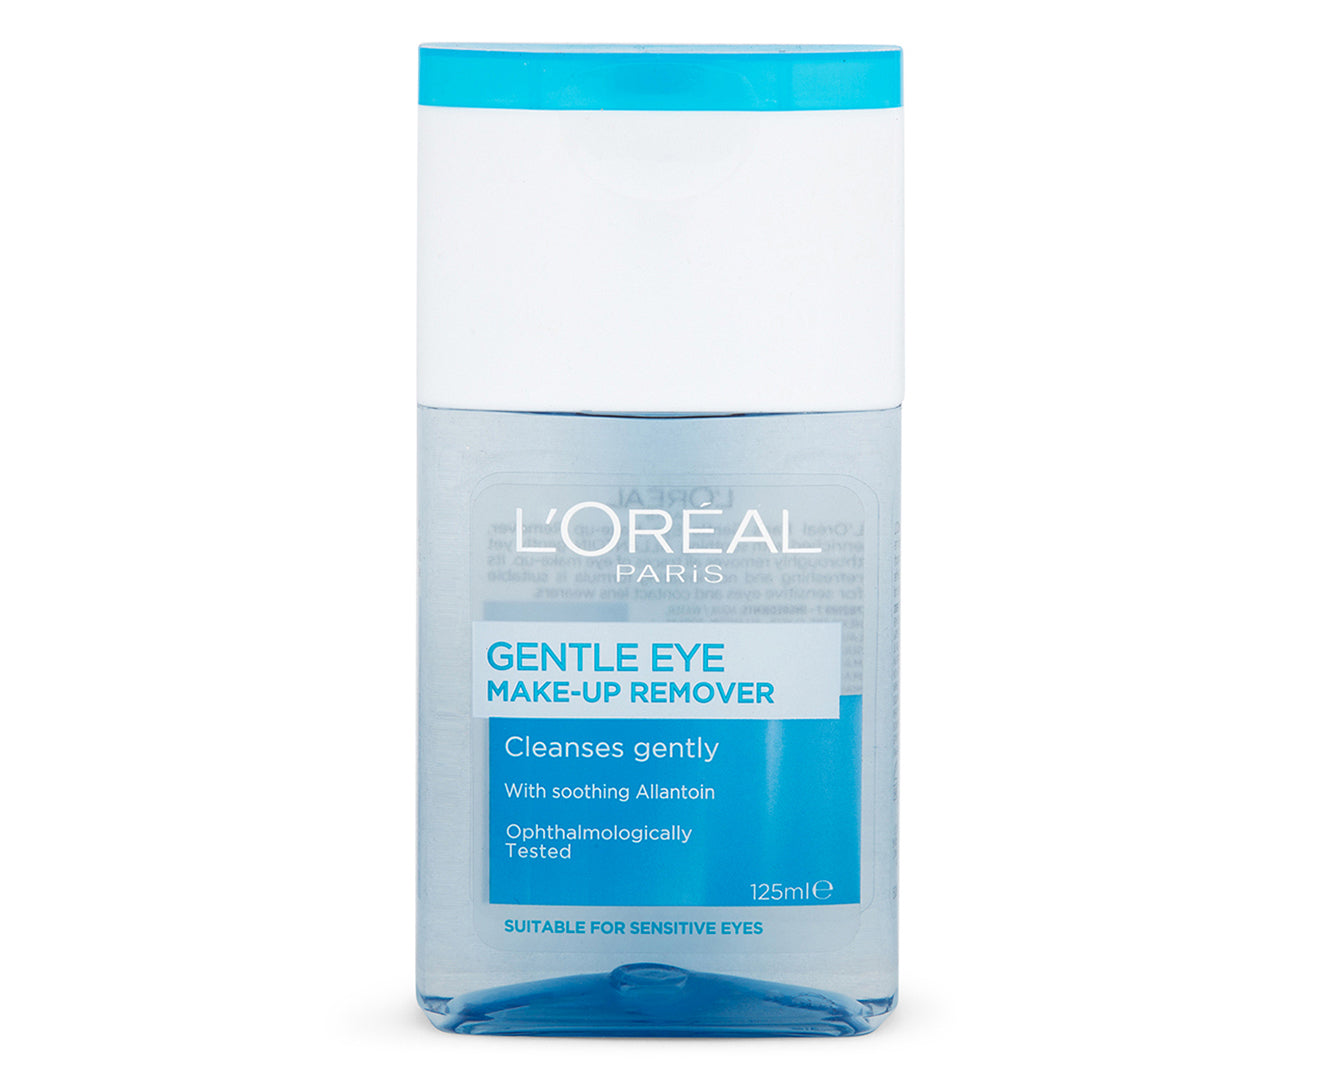 L'Oréal Paris Gentle Eye Make-Up Remover 125mL - Homeware Discounts